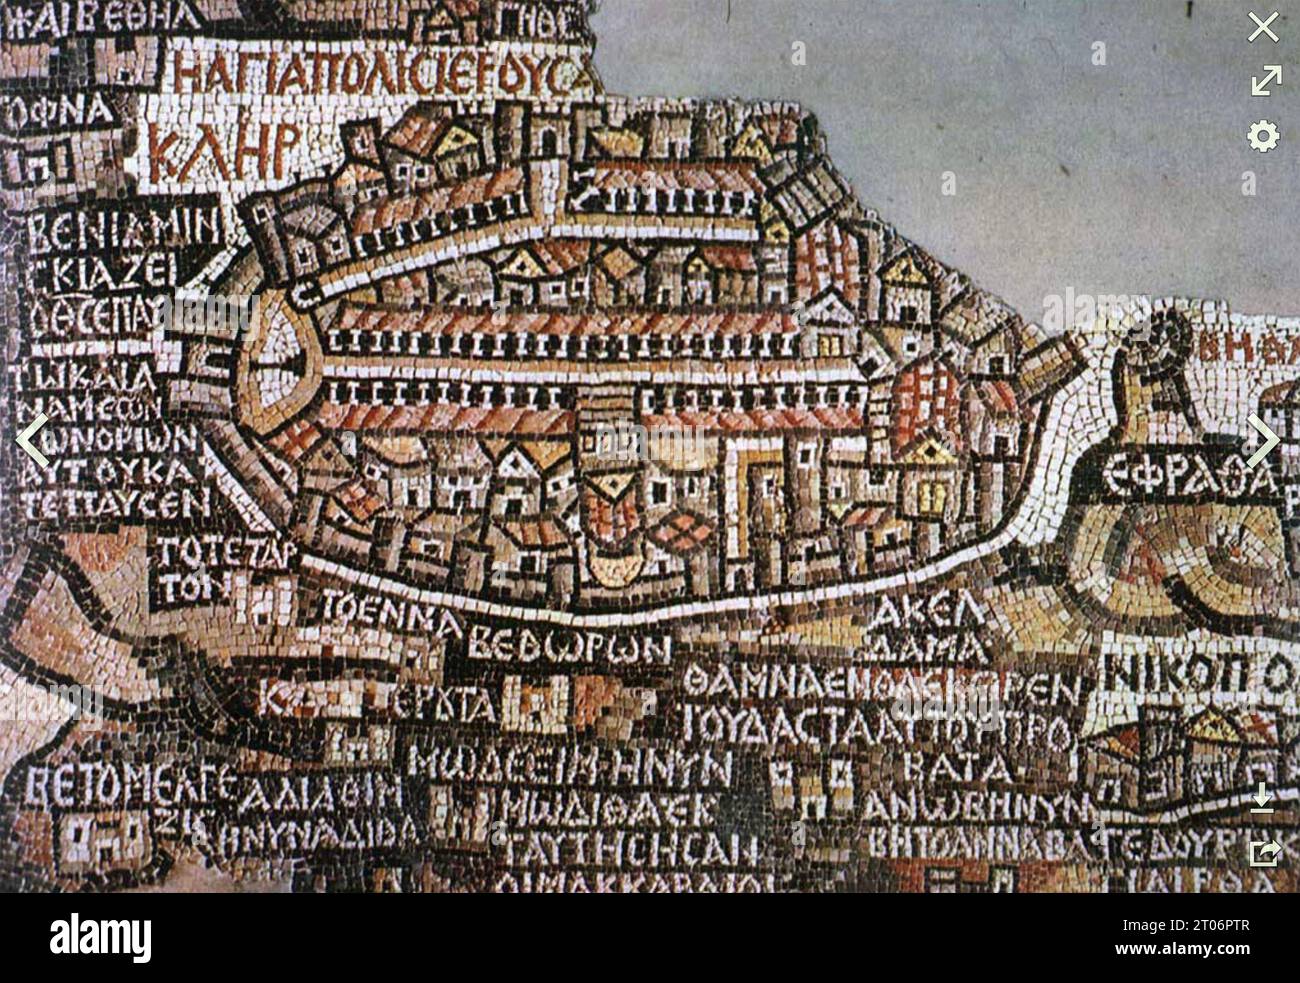 JÉRUSALEM la carte byzantine de la mosaïque de Madaba du 5e siècle après JC est la plus ancienne connue, c'est une section de la mosaïque de sol dans l'église byzantine de Saint George à Madaba, Jordanie. Banque D'Images